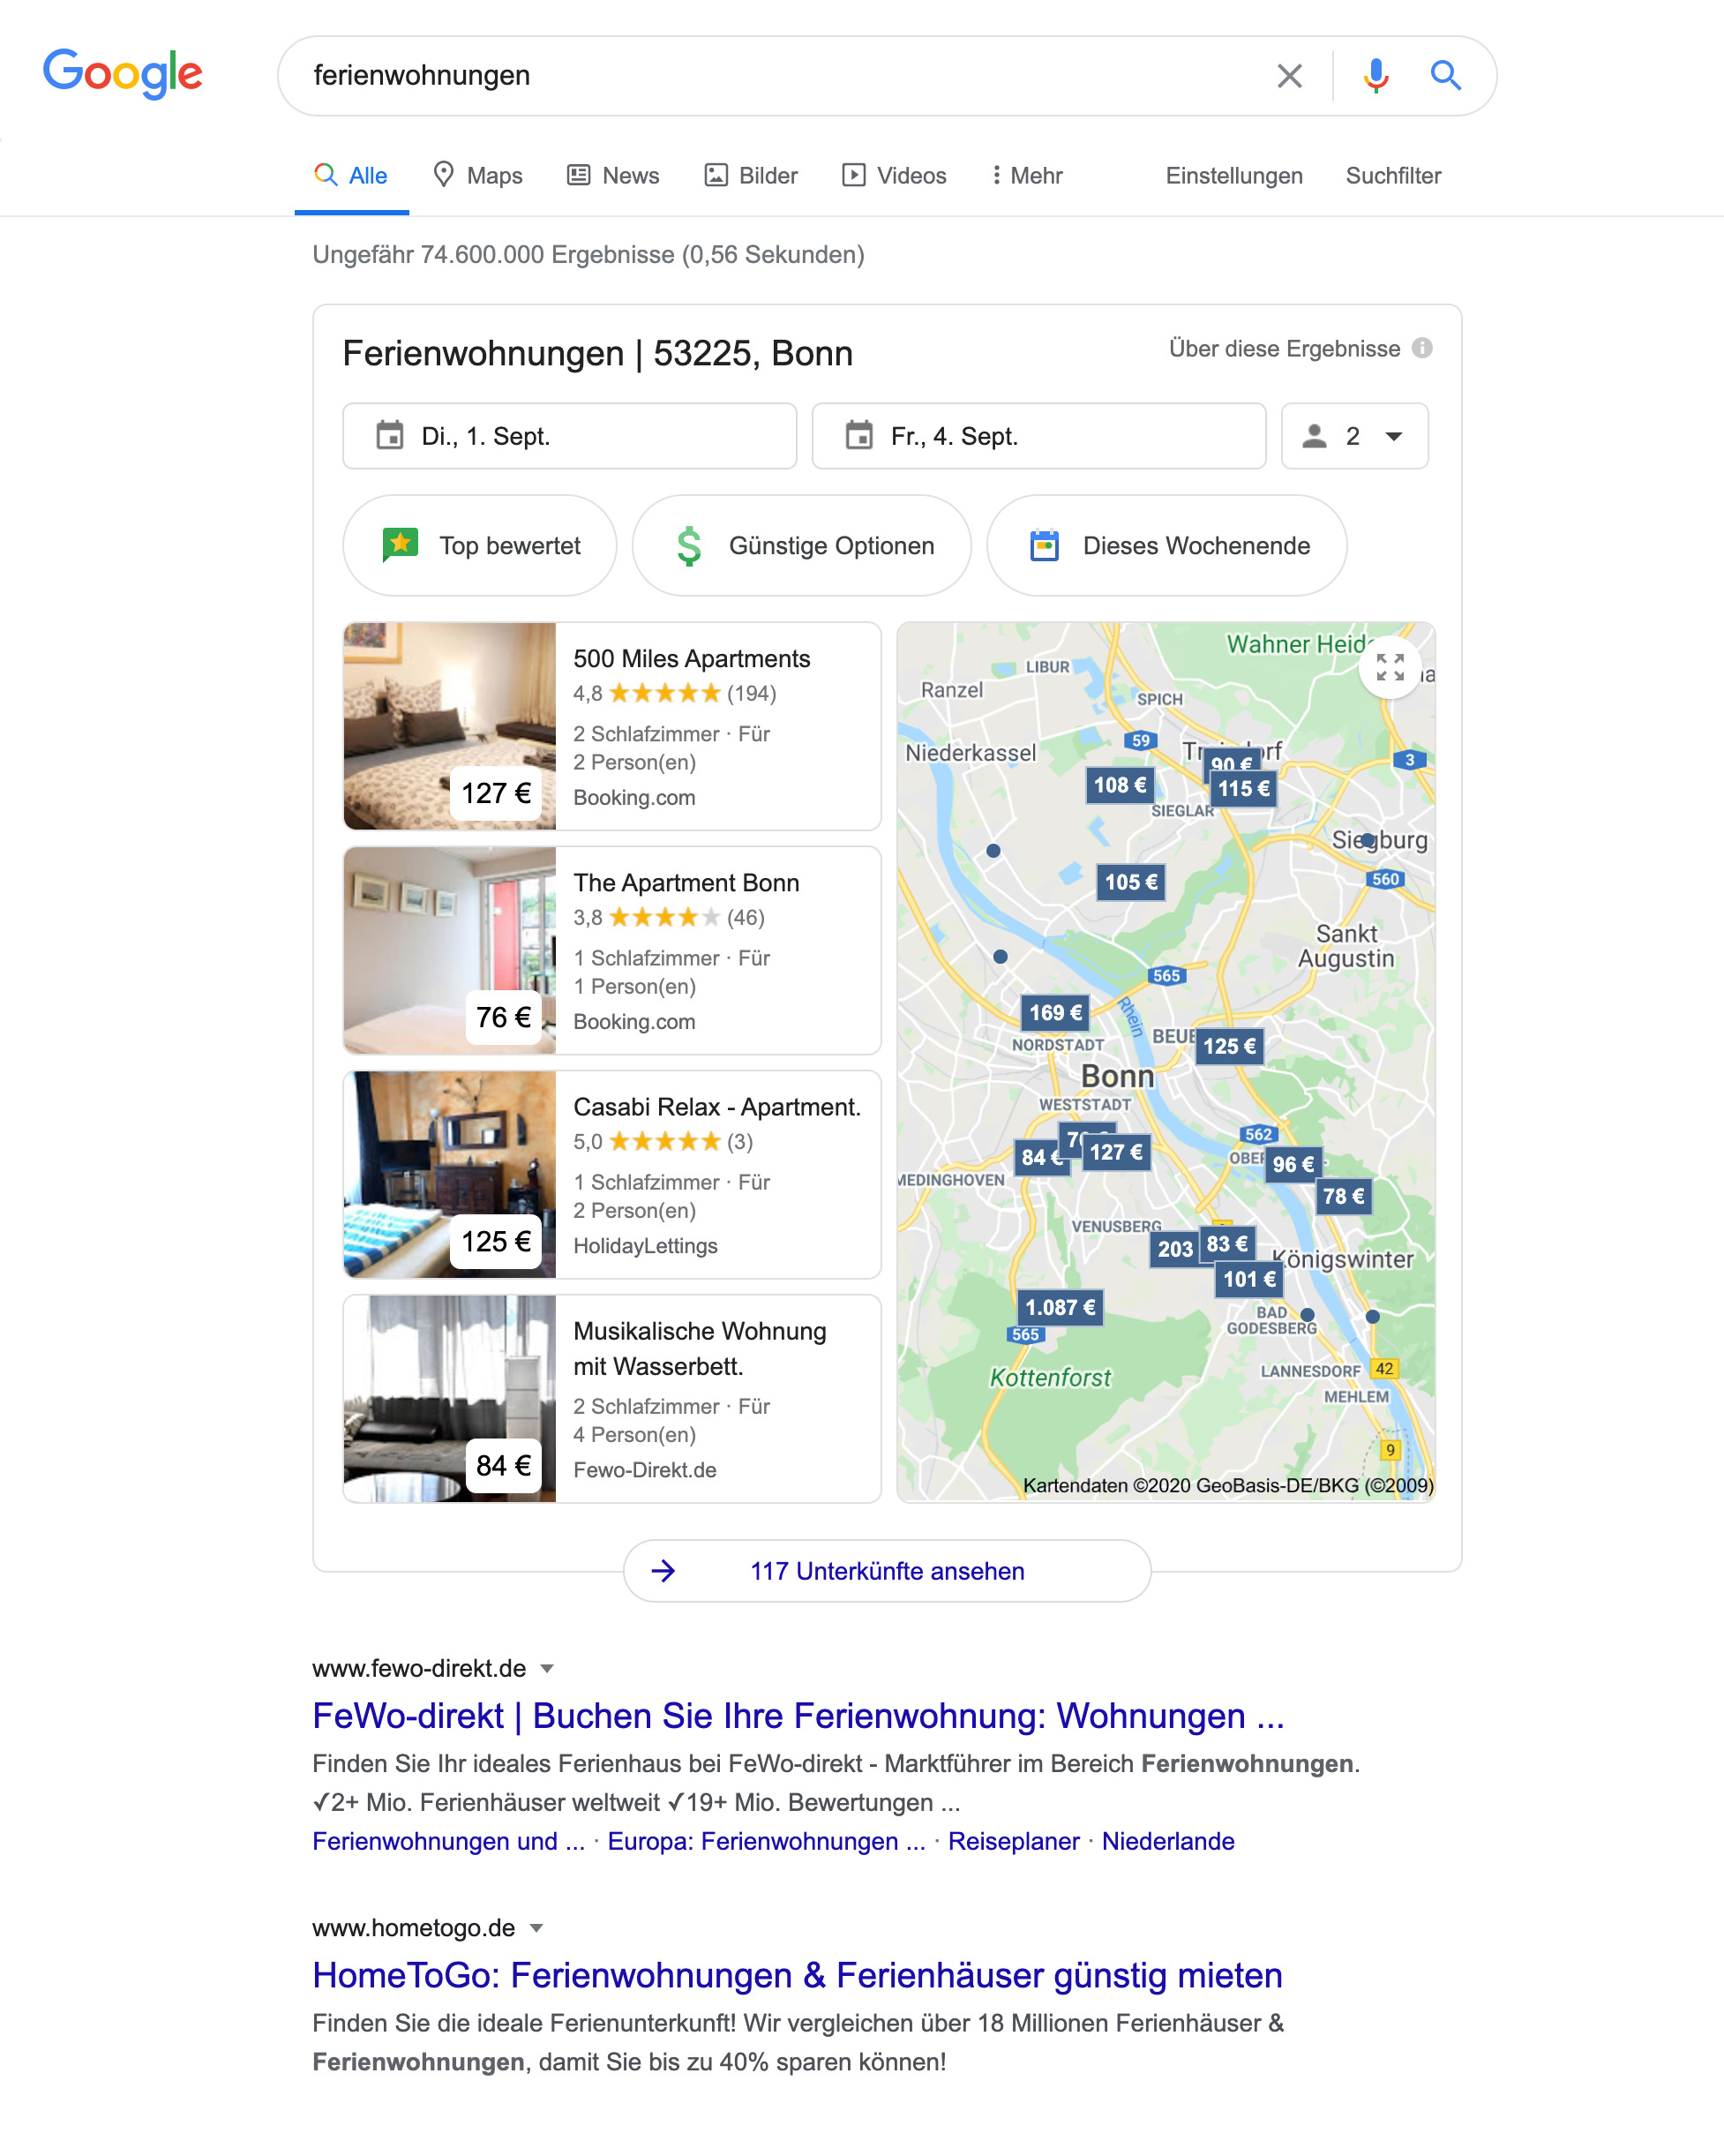 Zeigt die Google Maps Integration innerhalb der Google Suchergebnisse an.